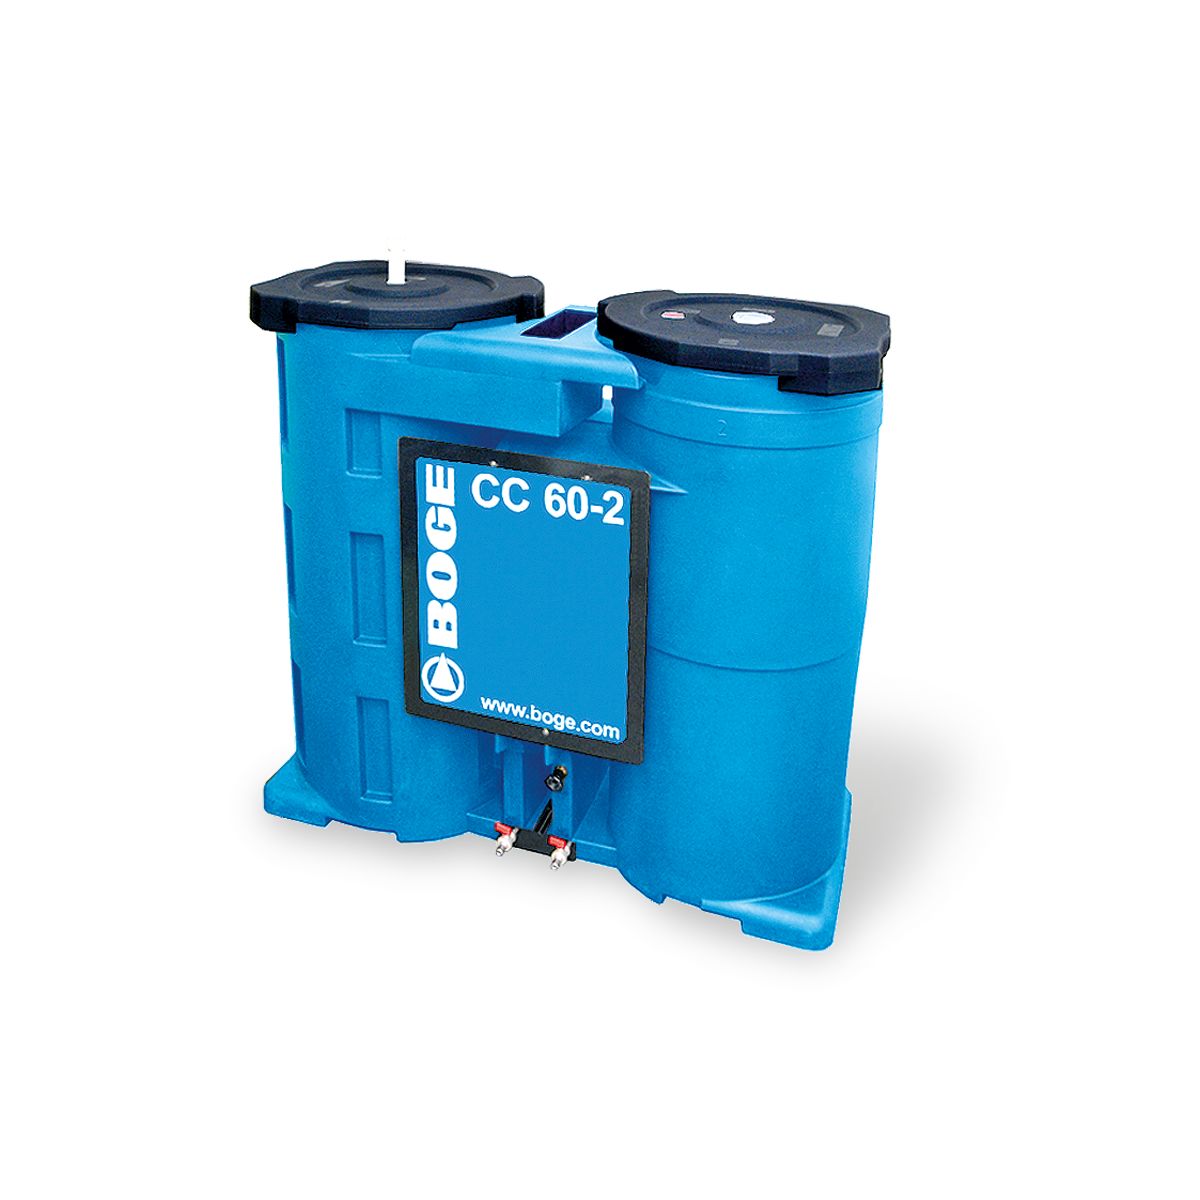 Cc-2 boge - séparateur huile-eau - boge france sarl - capacité de débit : 2 à 60 m3/min_0